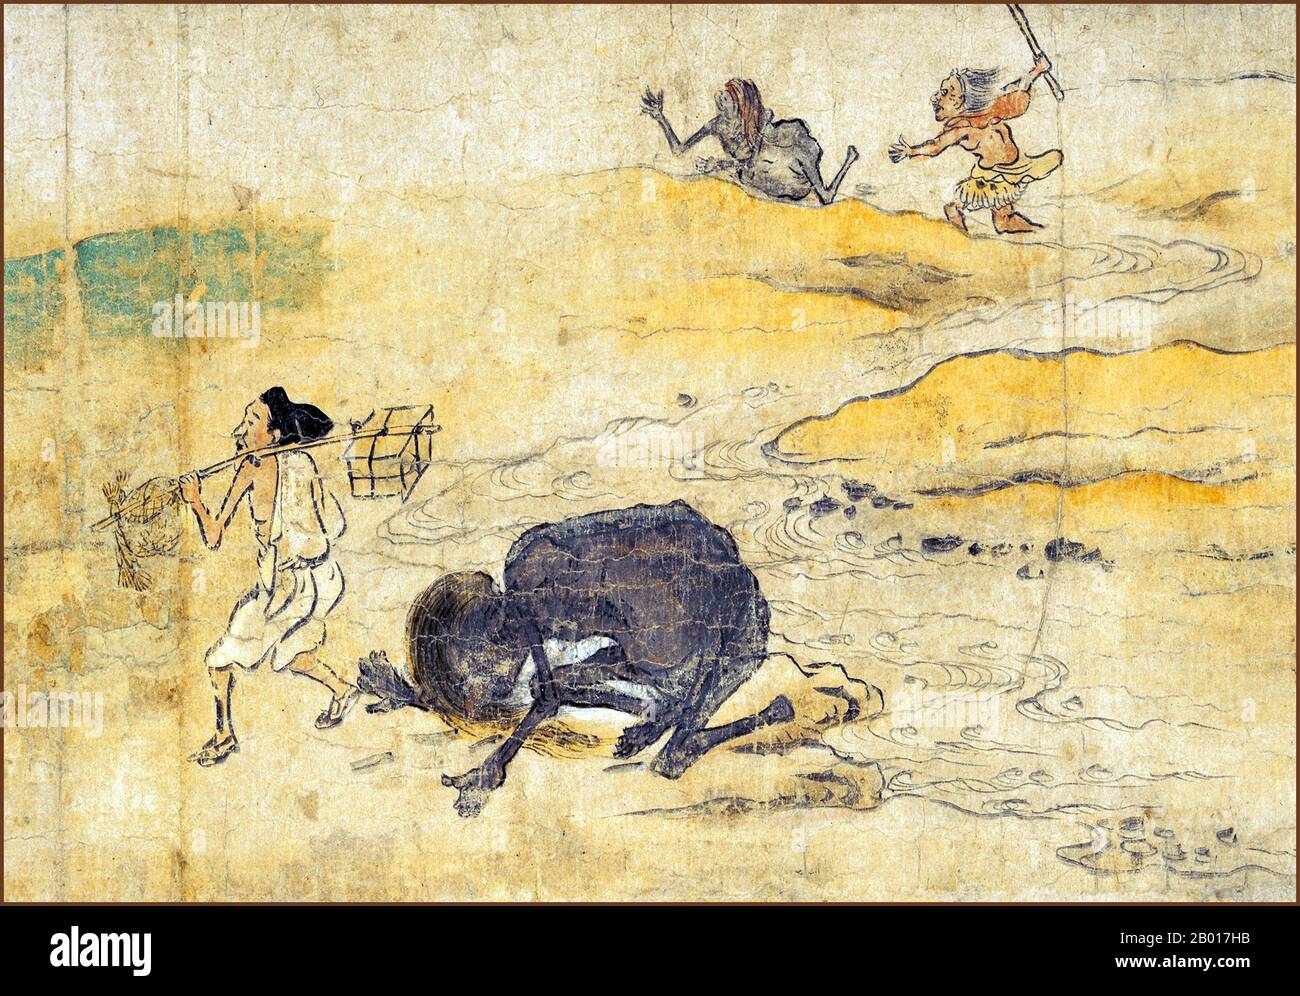 Giappone: 'Hungry Ghosts Scroll'. Dettaglio da un dipinto a grasino, fine 12th secolo. La prima sezione dell'Hungry Ghosts Scroll si trova presso il Museo Nazionale di Kyoto. Il rotolo raffigura il mondo dei fantasmi affamati, uno dei sei reami del Buddismo e contiene storie di salvezza dei fantasmi affamati. Questa sezione specifica spiega come coloro che sono nati come fantasmi affamati sono salvati dalle offerte dei viventi. Essa racconta la storia di uno dei trentasei tipi di fantasmi affamati che cercano costantemente acqua da bere e raffigura la sofferenza di queste creature. Foto Stock